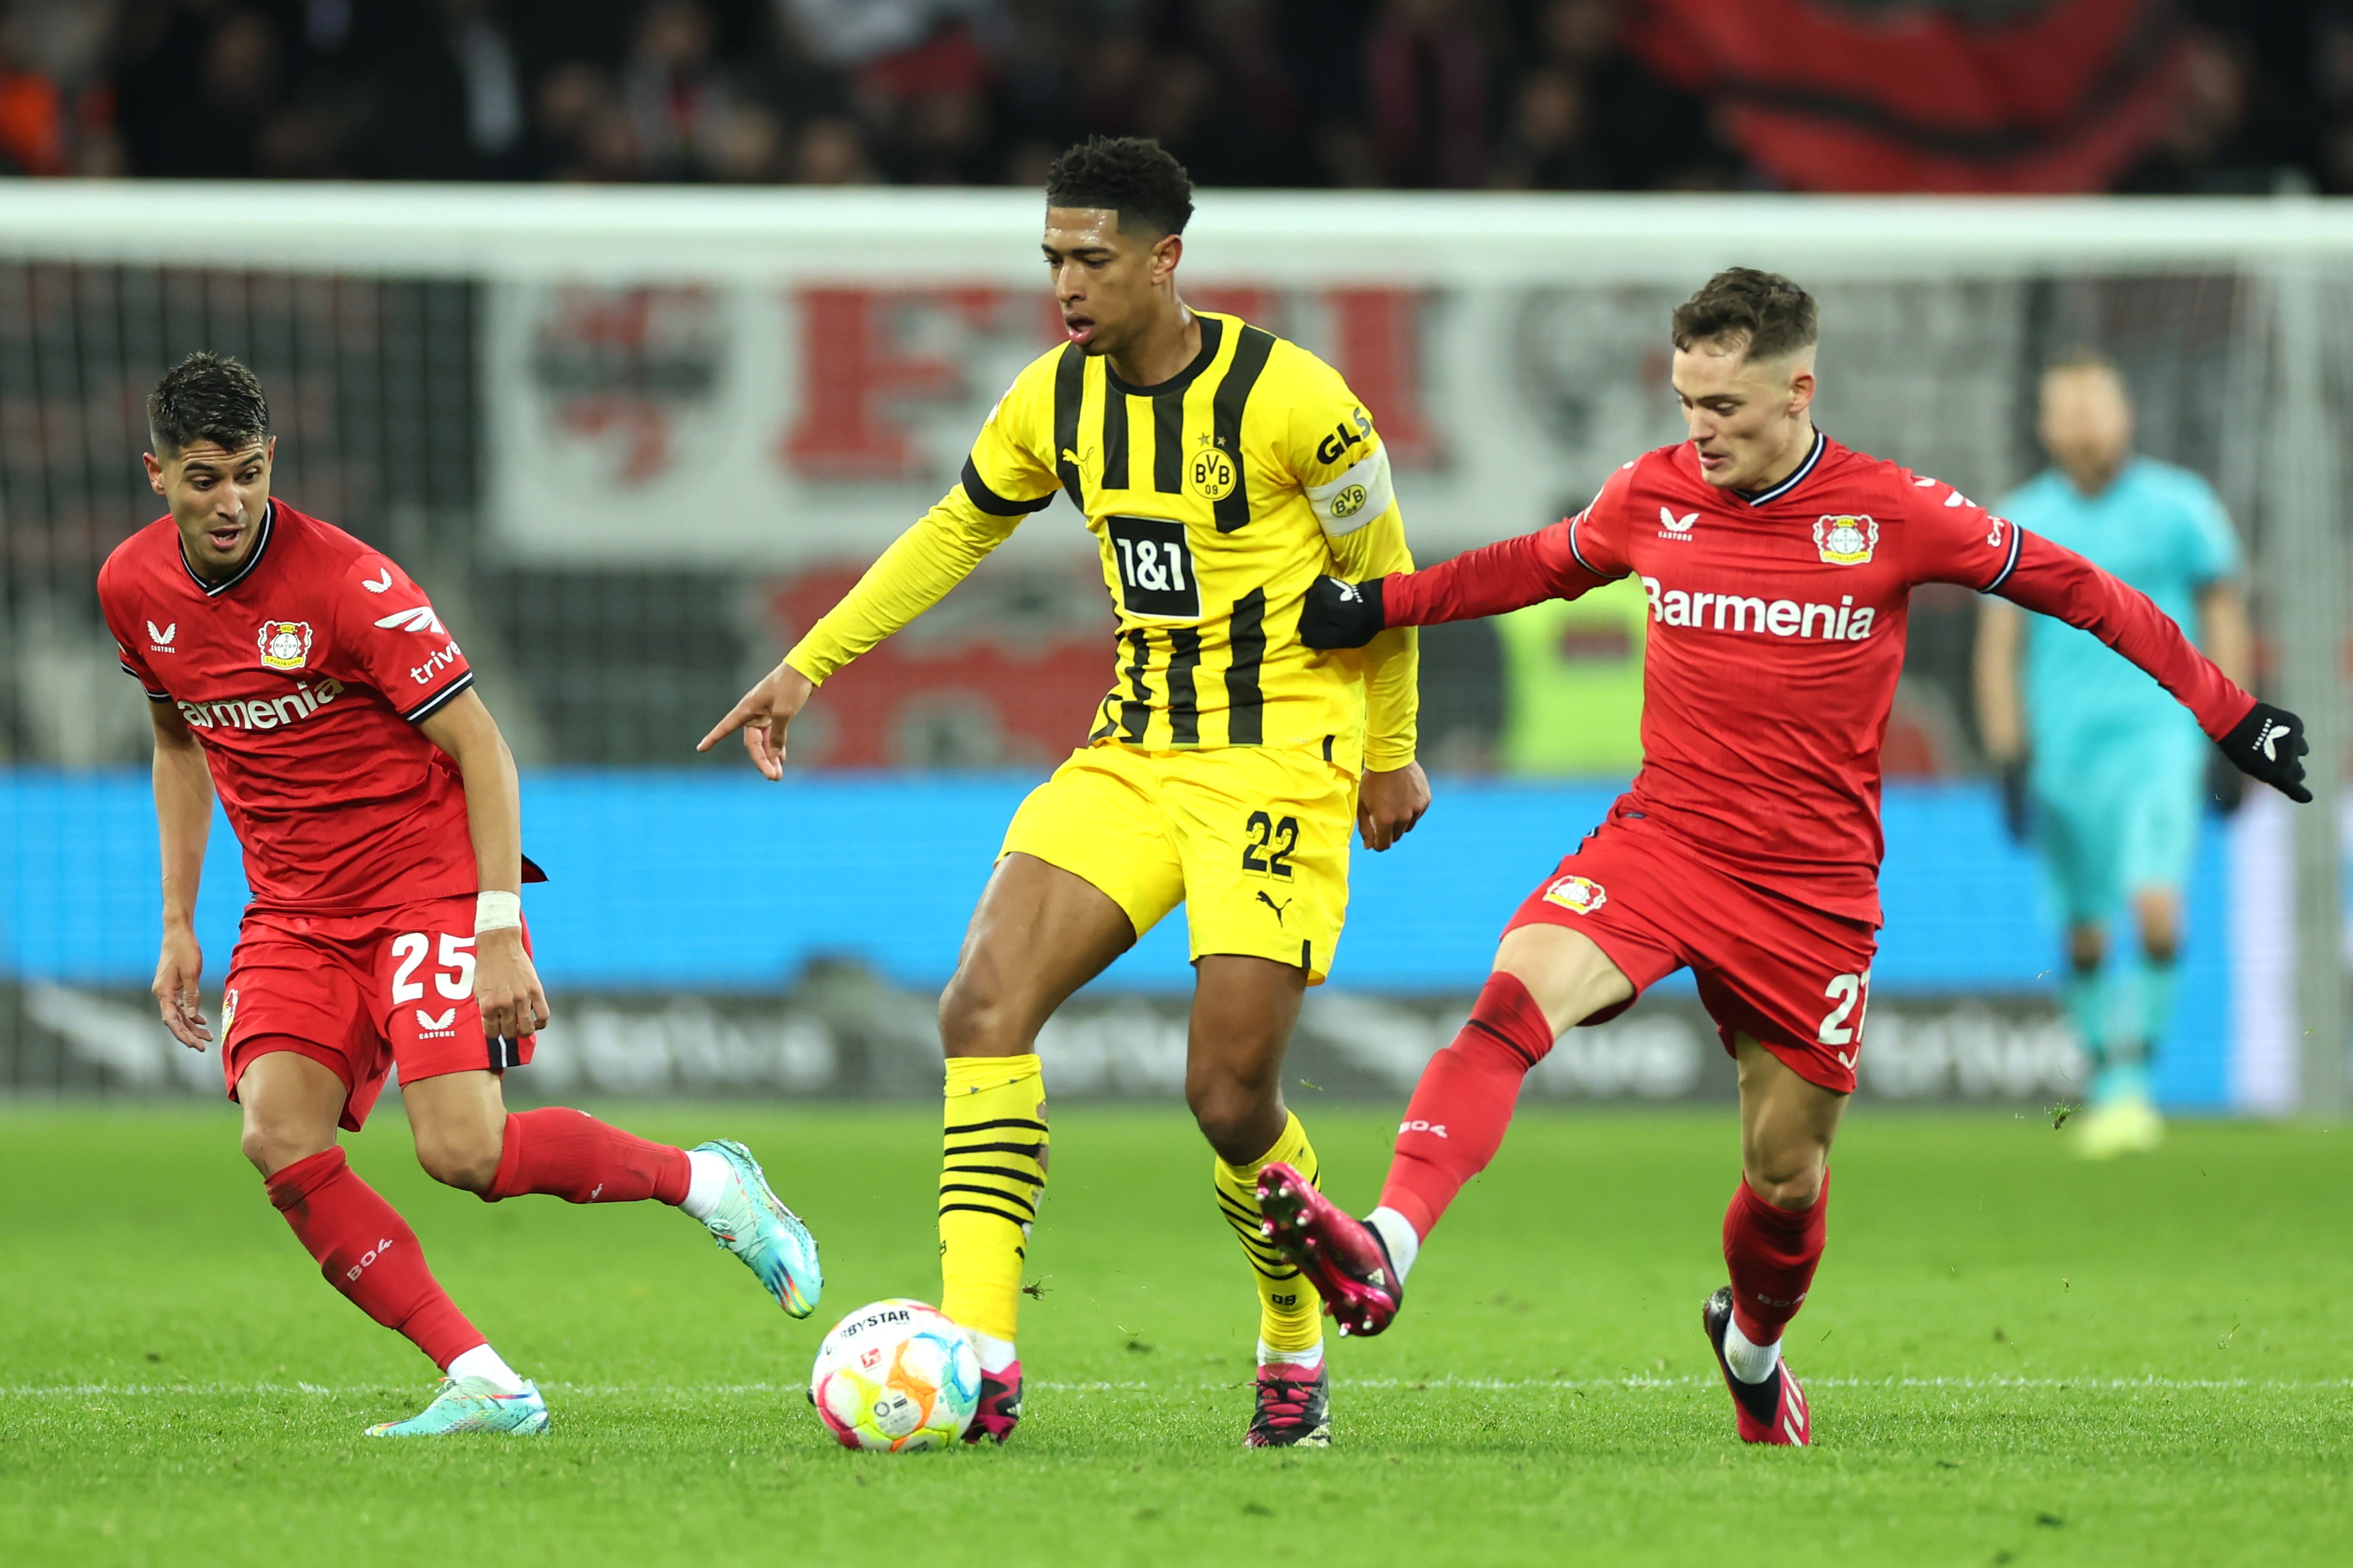 Jude Bellingham of Borussia Dortmund is challenged by Florian Wirtz of Bayer 04 Leverkusen